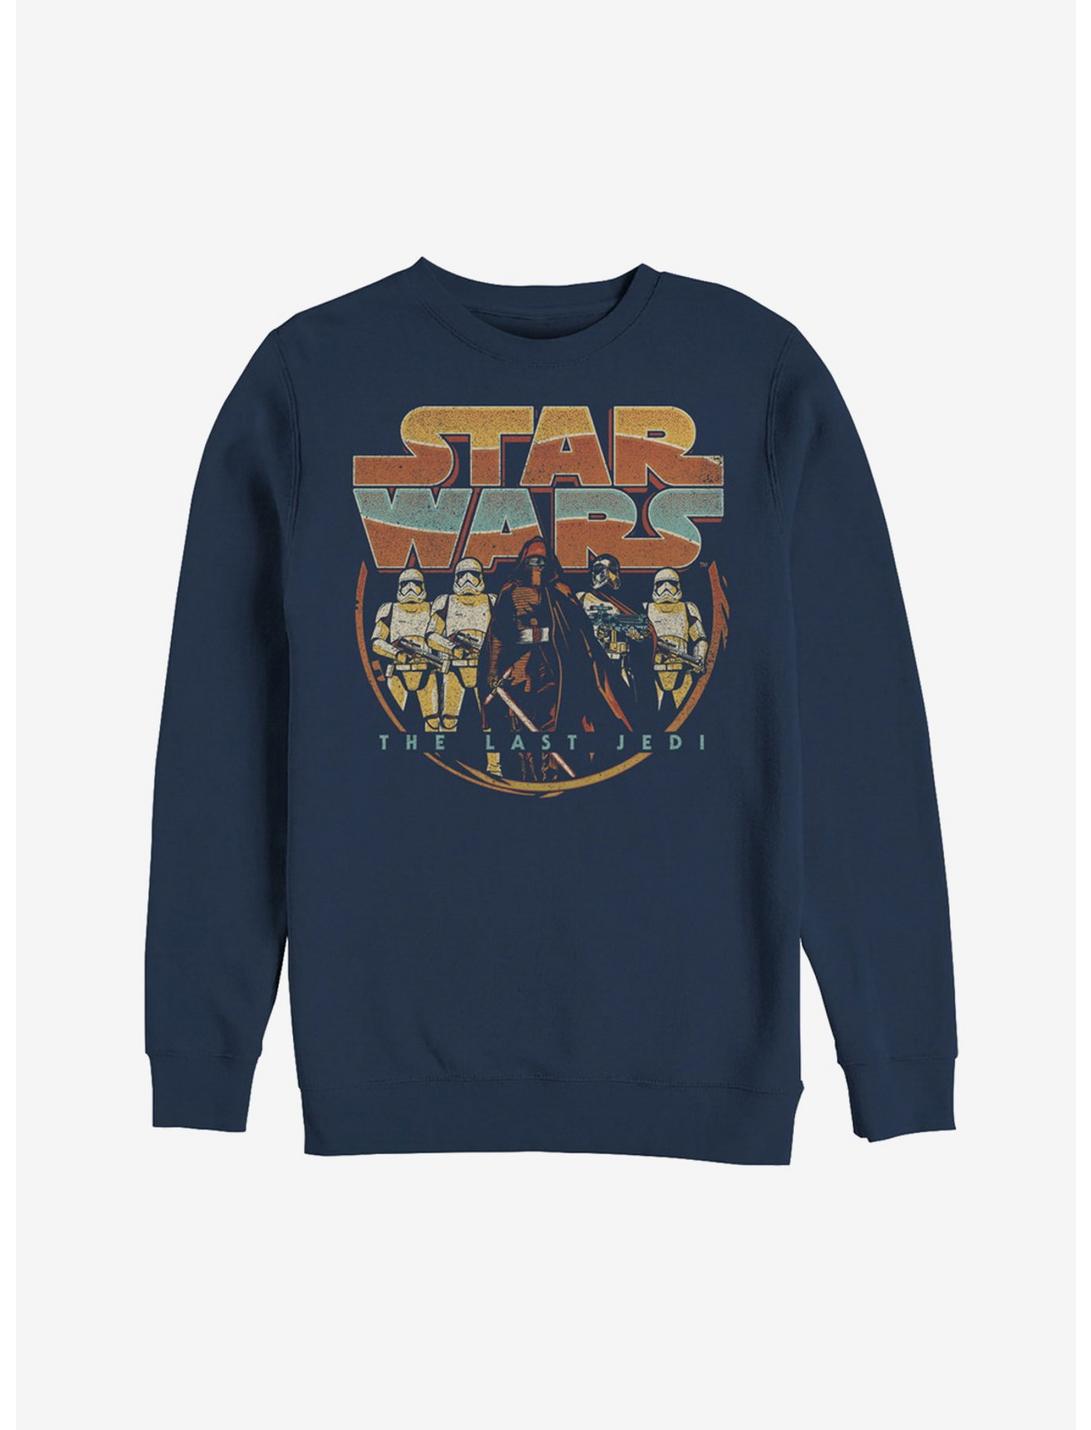 Star Wars First Order Retro Sweatshirt, NAVY, hi-res